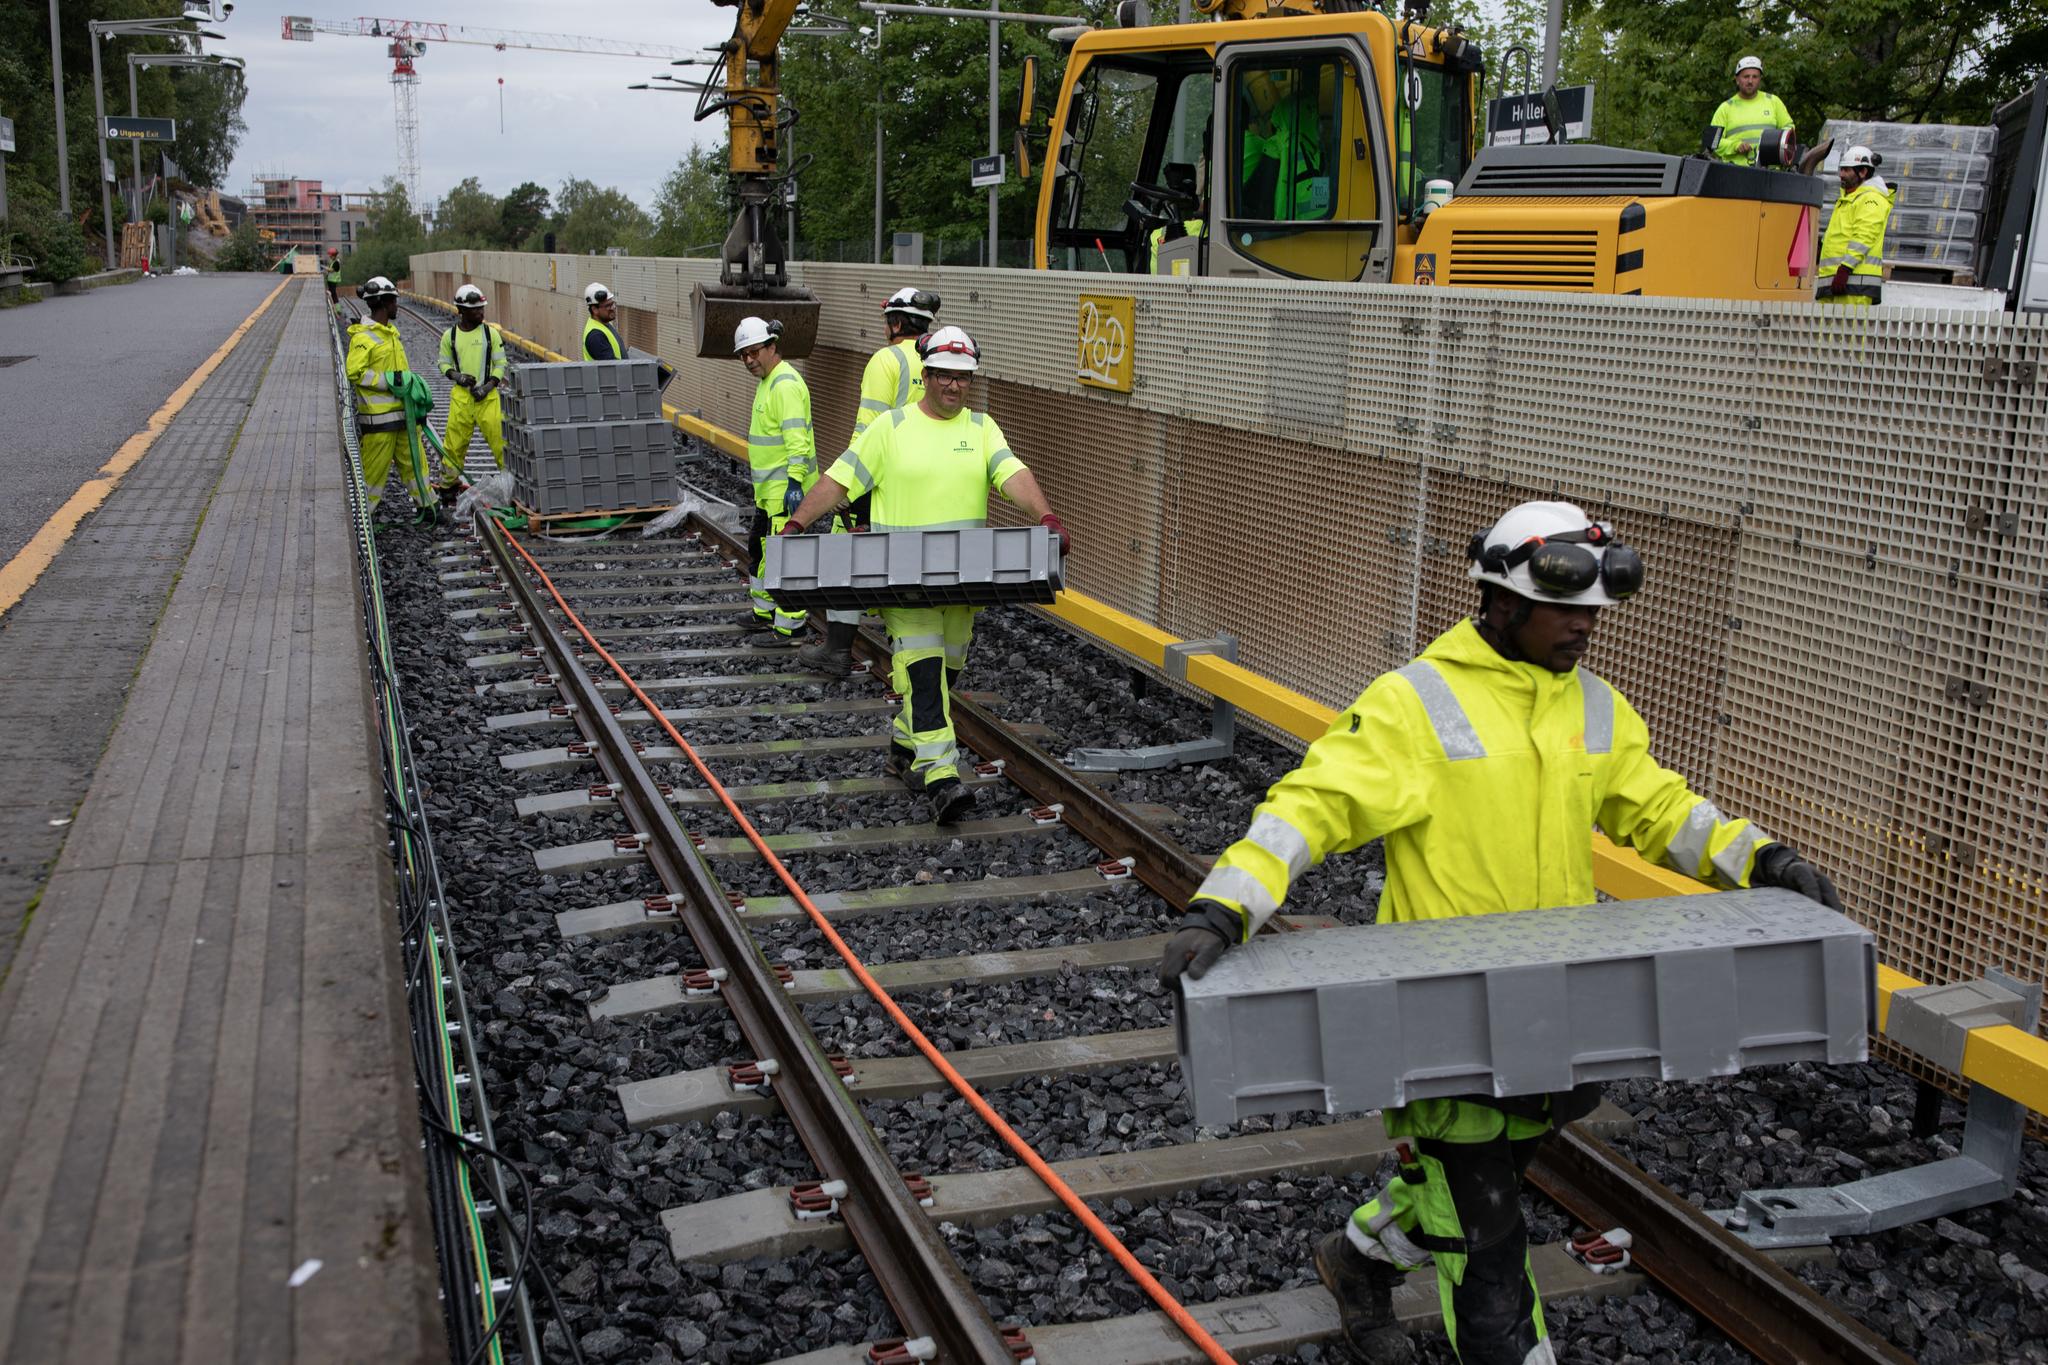 Her er noen av nærmere 100 personer som til daglig jobber for å oppgradere T-banestrekningen mellom Brynseng og Ellingsrudåsen. Her jobbes det på Hellerud T-banestasjon.